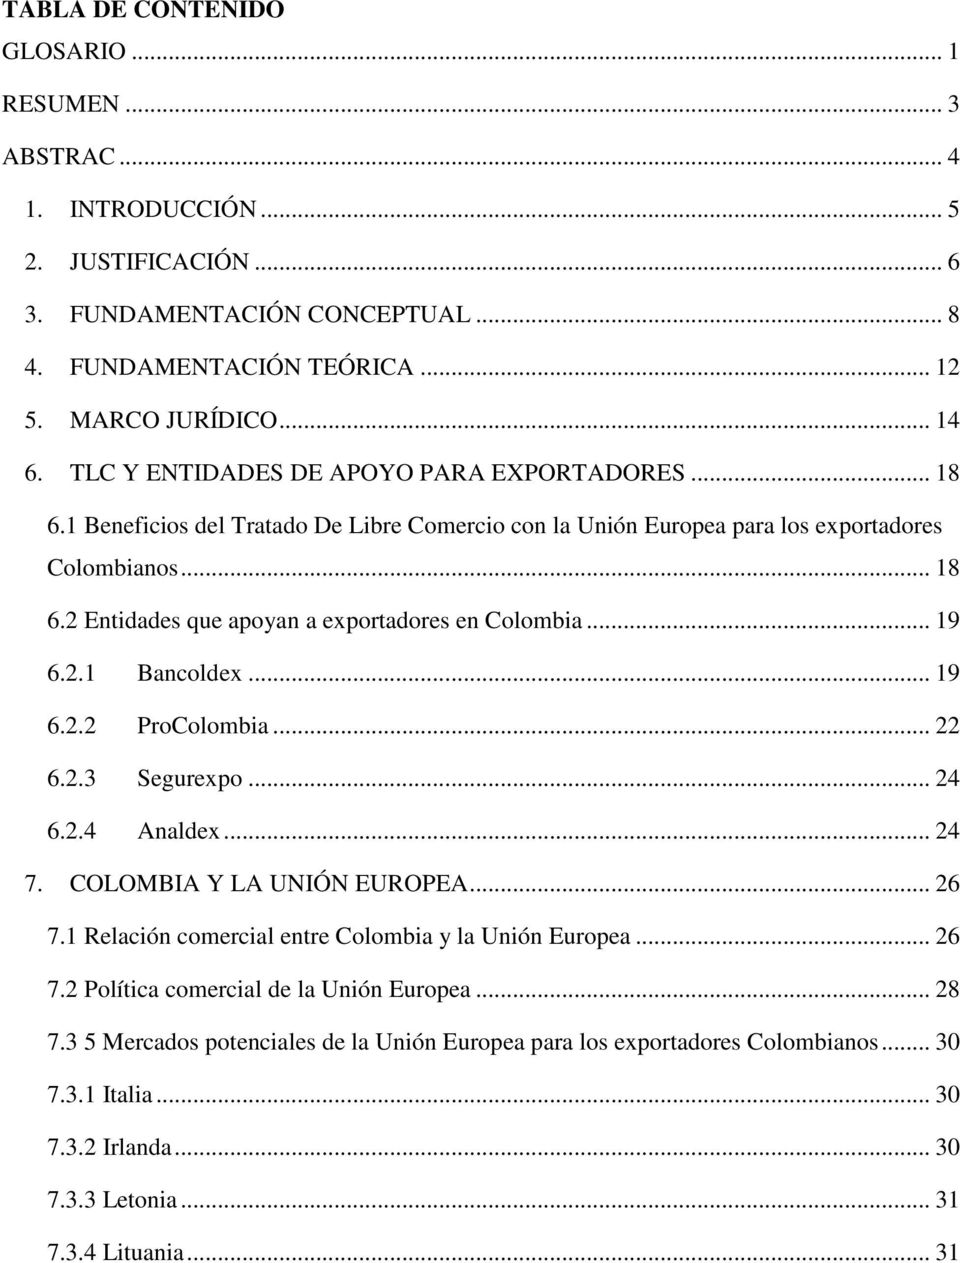 .. 19 6.2.1 Bancoldex... 19 6.2.2 ProColombia... 22 6.2.3 Segurexpo... 24 6.2.4 Analdex... 24 7. COLOMBIA Y LA UNIÓN EUROPEA... 26 7.1 Relación comercial entre Colombia y la Unión Europea... 26 7.2 Política comercial de la Unión Europea.